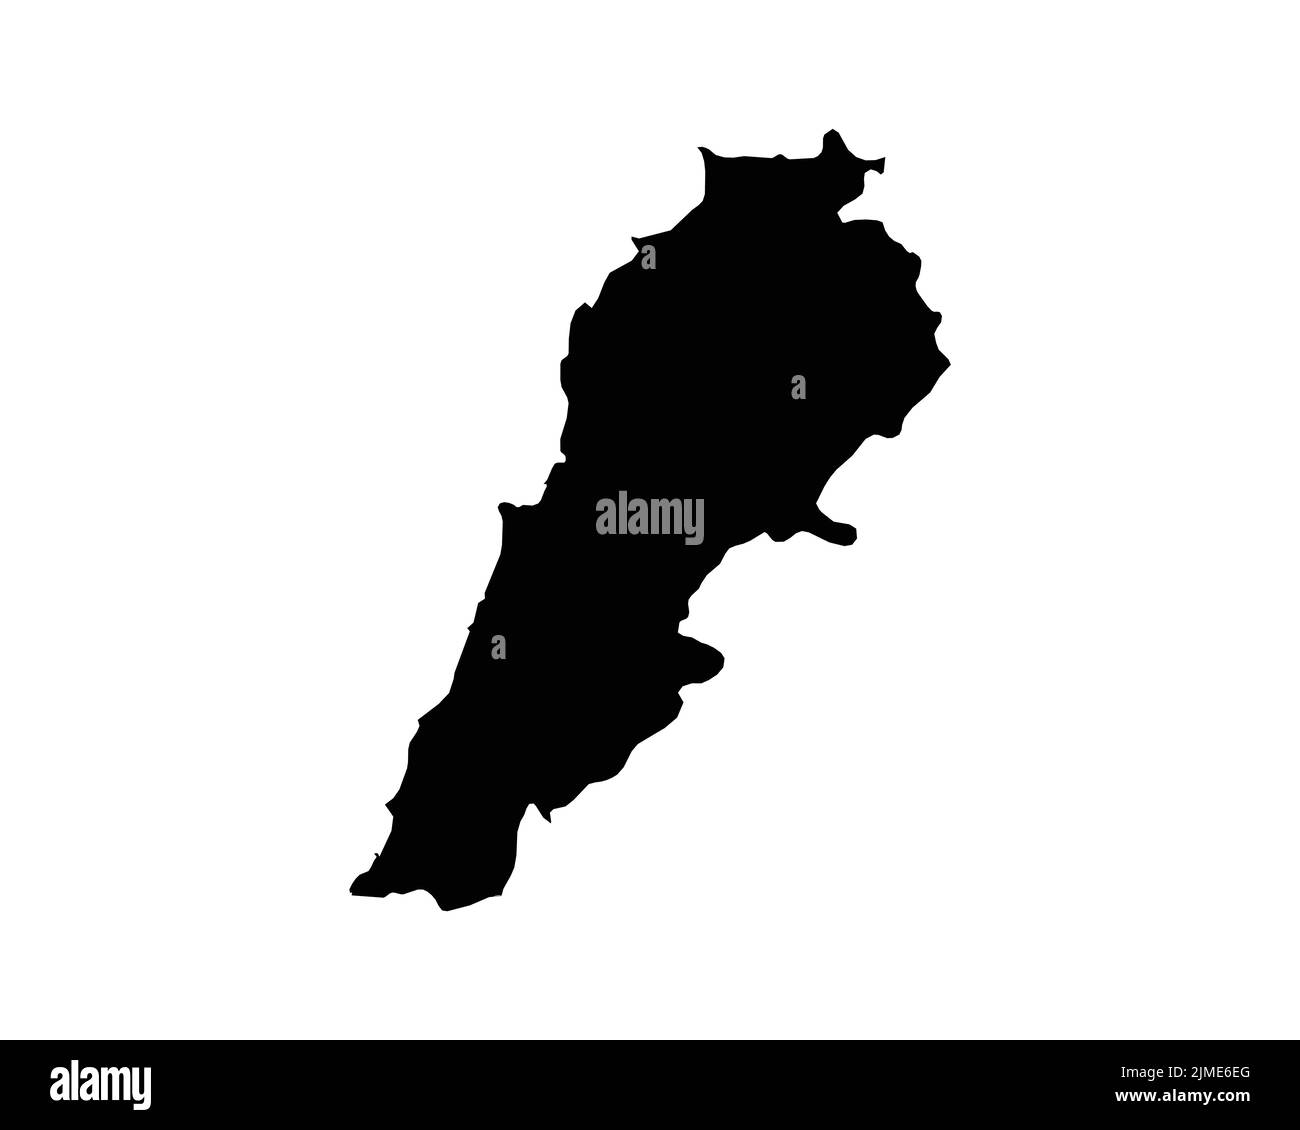 Libanon-Karte. Libanesische Landkarte. Schwarz-Weiß National Nation Gliederung Geographie Grenze Grenzform Territorium Vektor Illustration EPS Clipart Stock Vektor